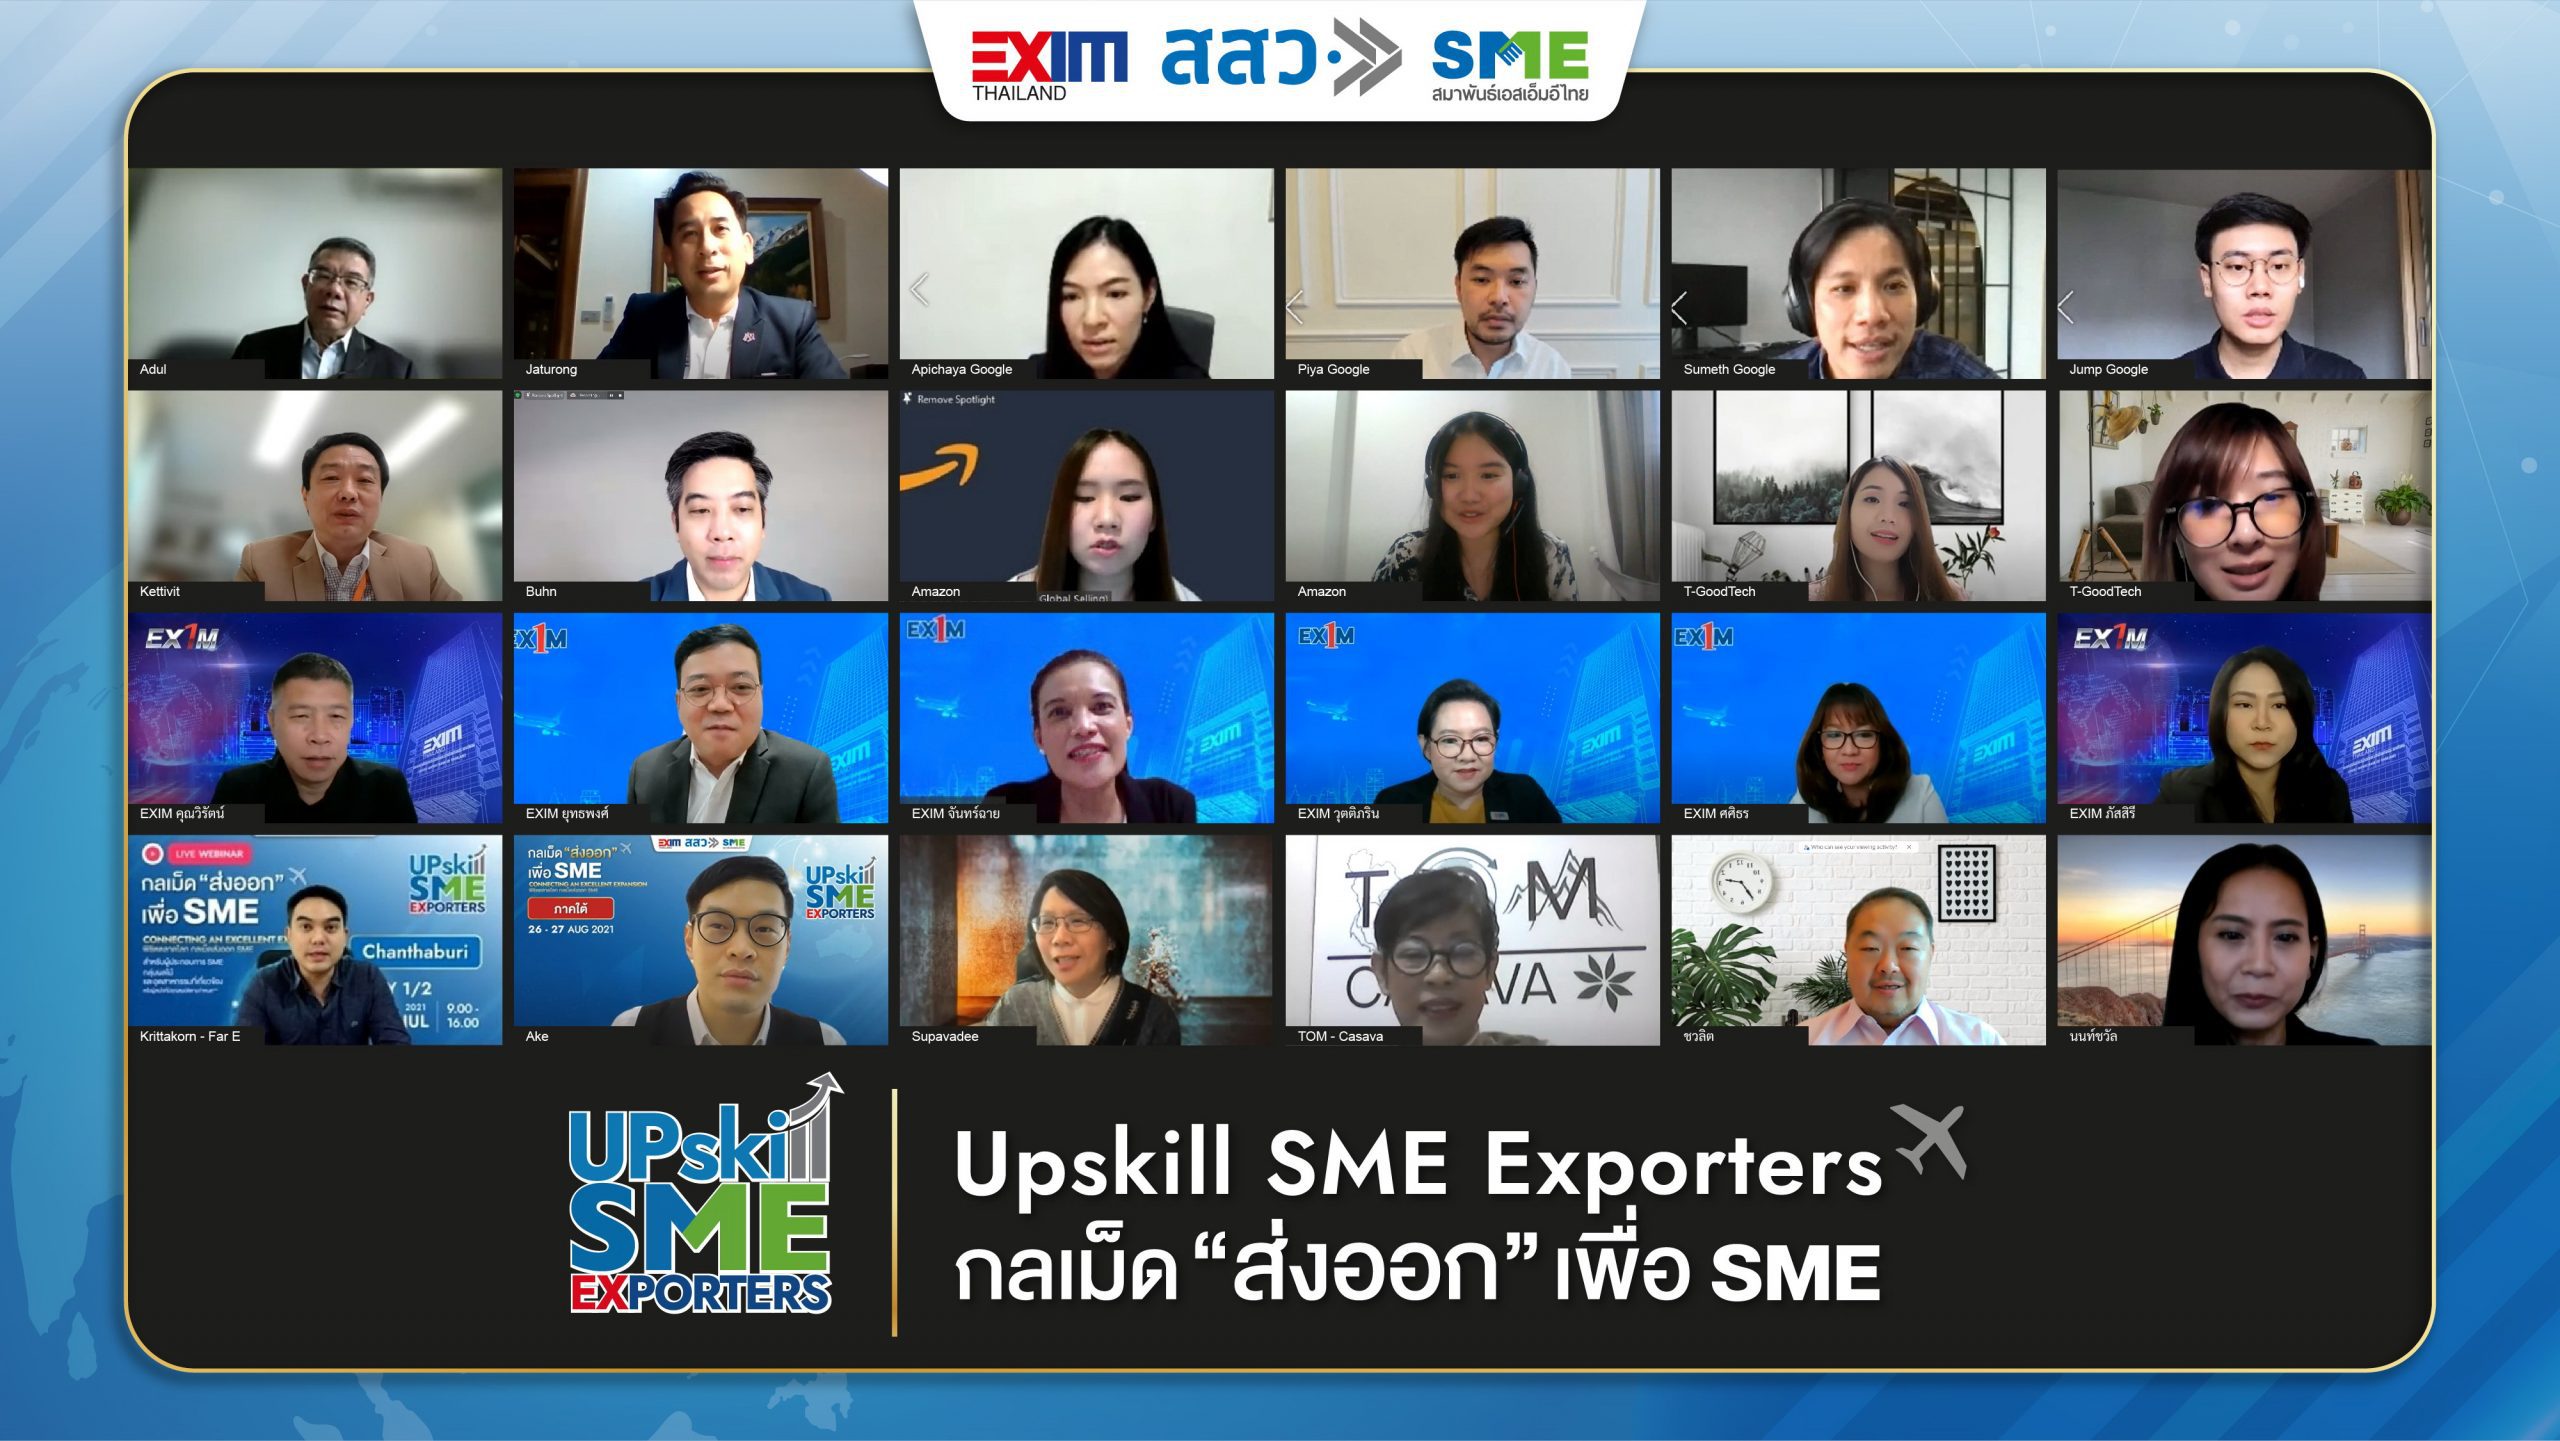 งานใหญ่ประจำปีสำหรับ SME “Upskill SME Exporters พิชิตตลาดโลก กลเม็ดการส่งออกเพื่อ SME”